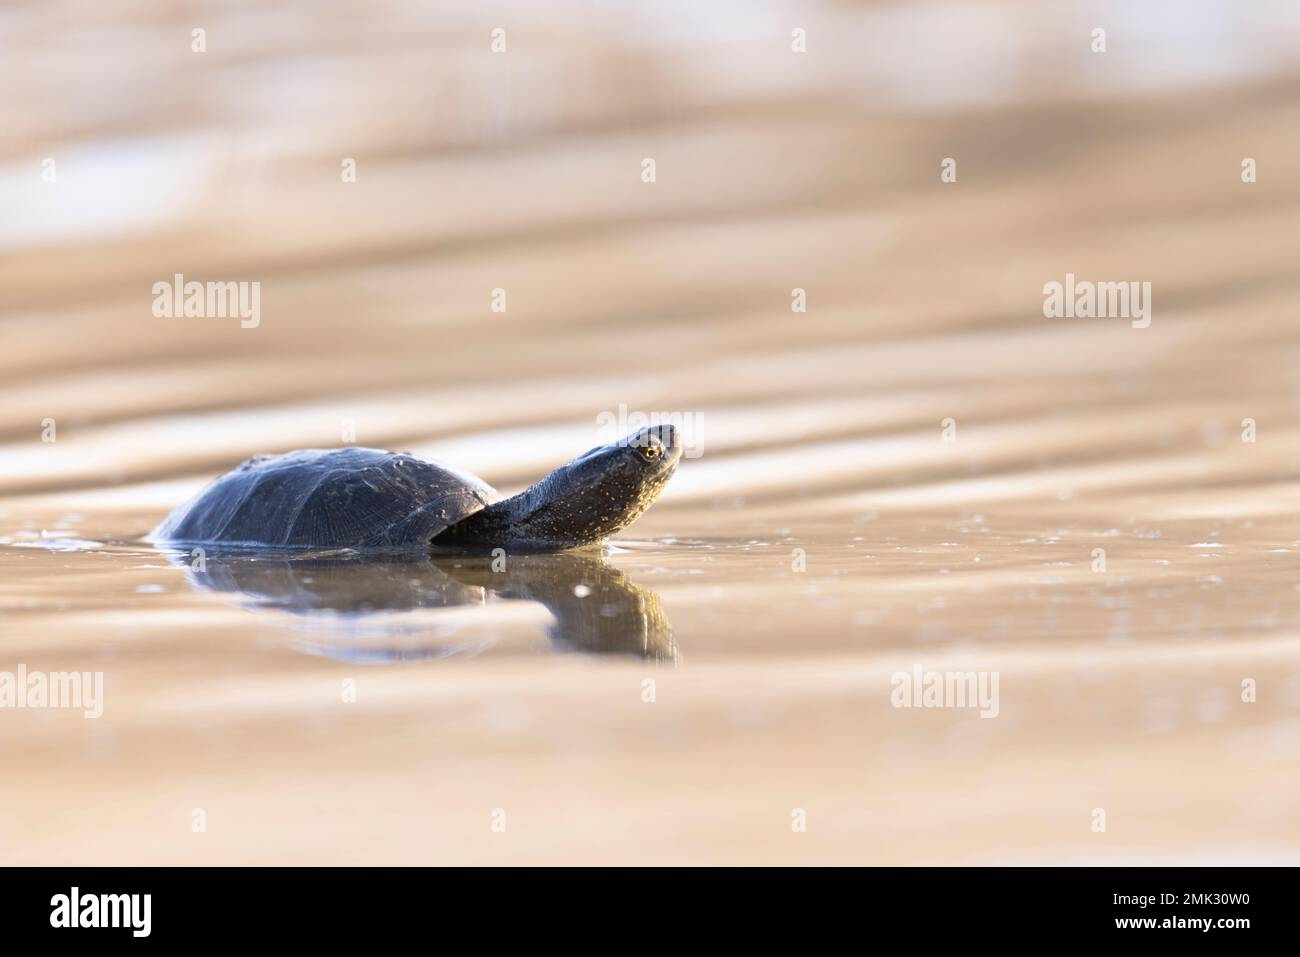 La tortue d'étang européenne, l'étang européen terrapin, la tortue d'étang européenne (Emys orbicularis). Banque D'Images